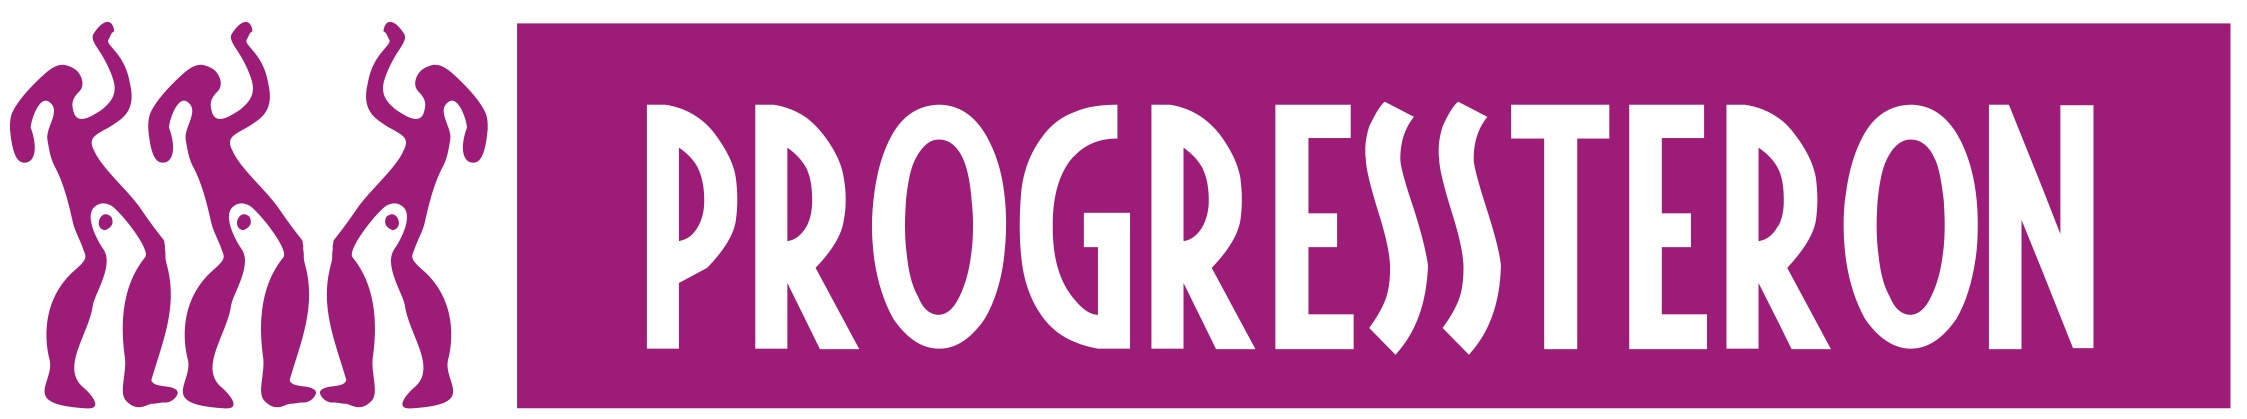 logo_progressteron